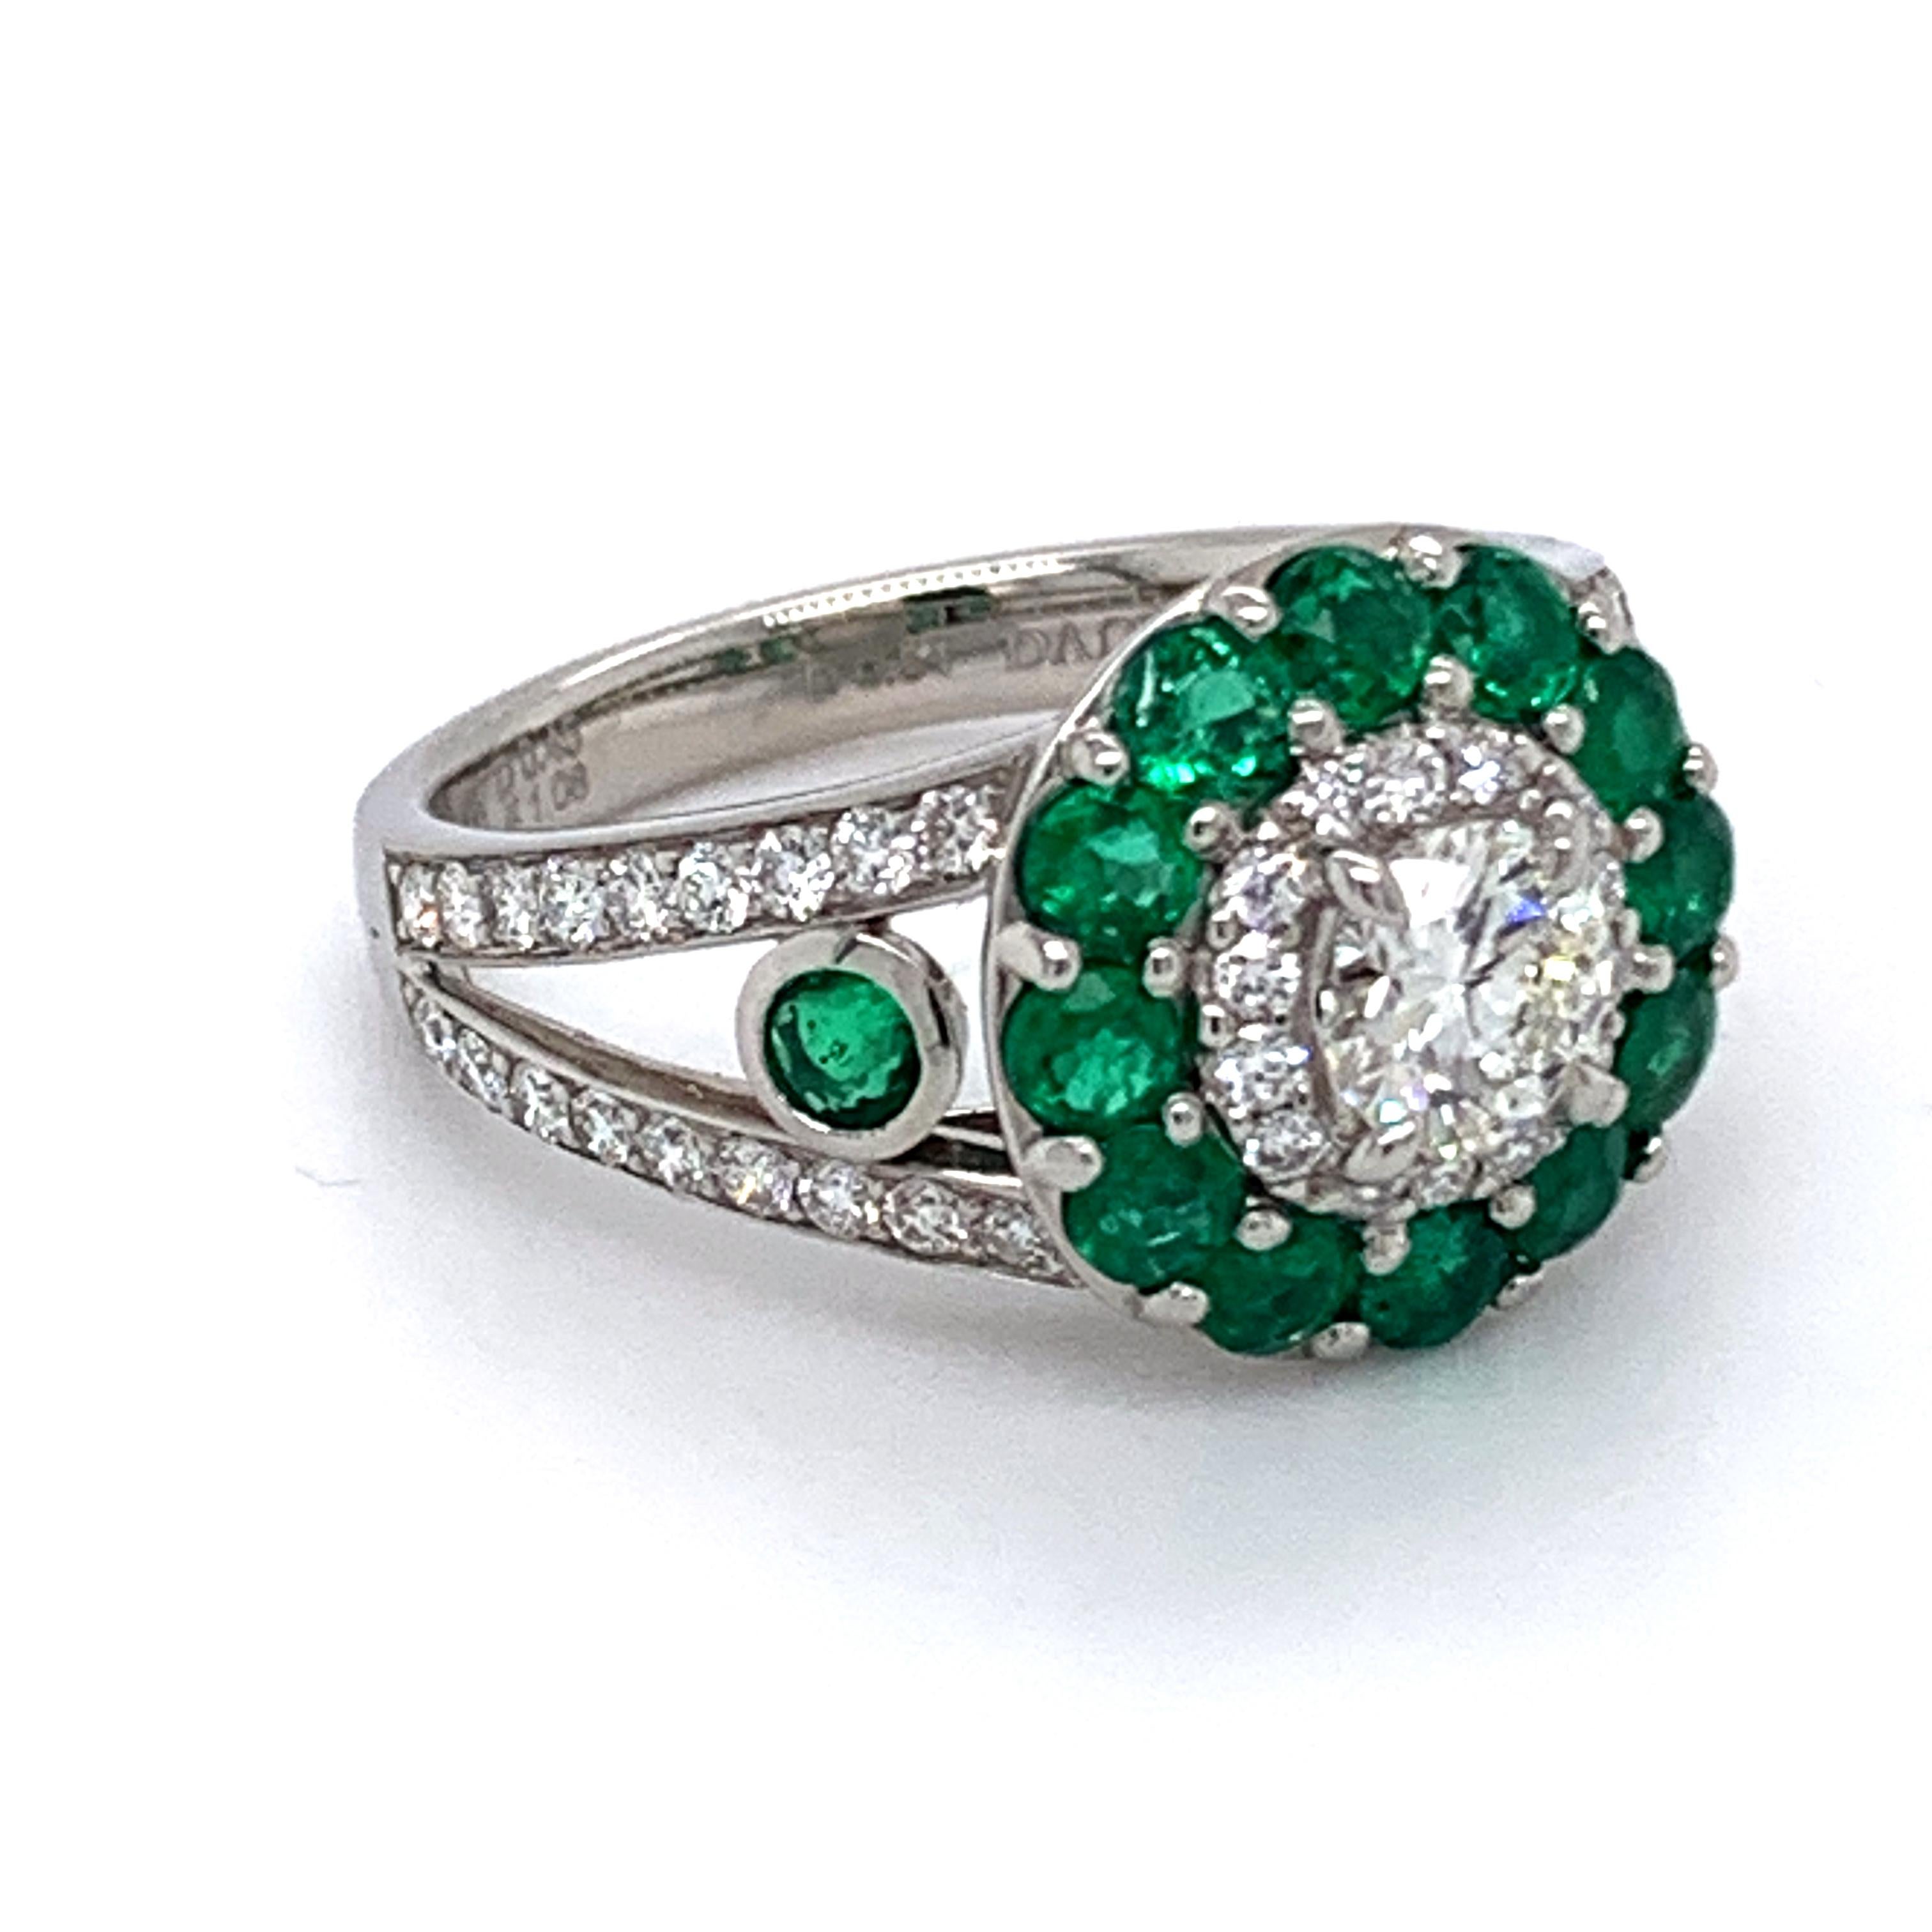 Solide Platin Ring ein von der Art von Danuta mit Diamanten Zentrum .54 Karat Gesamtgewicht G Farbe VS1 Klarheit umgeben von 
smaragde von 1,08 Karat und gepflasterte Diamanten von 0,45 Karat Gesamtgewicht